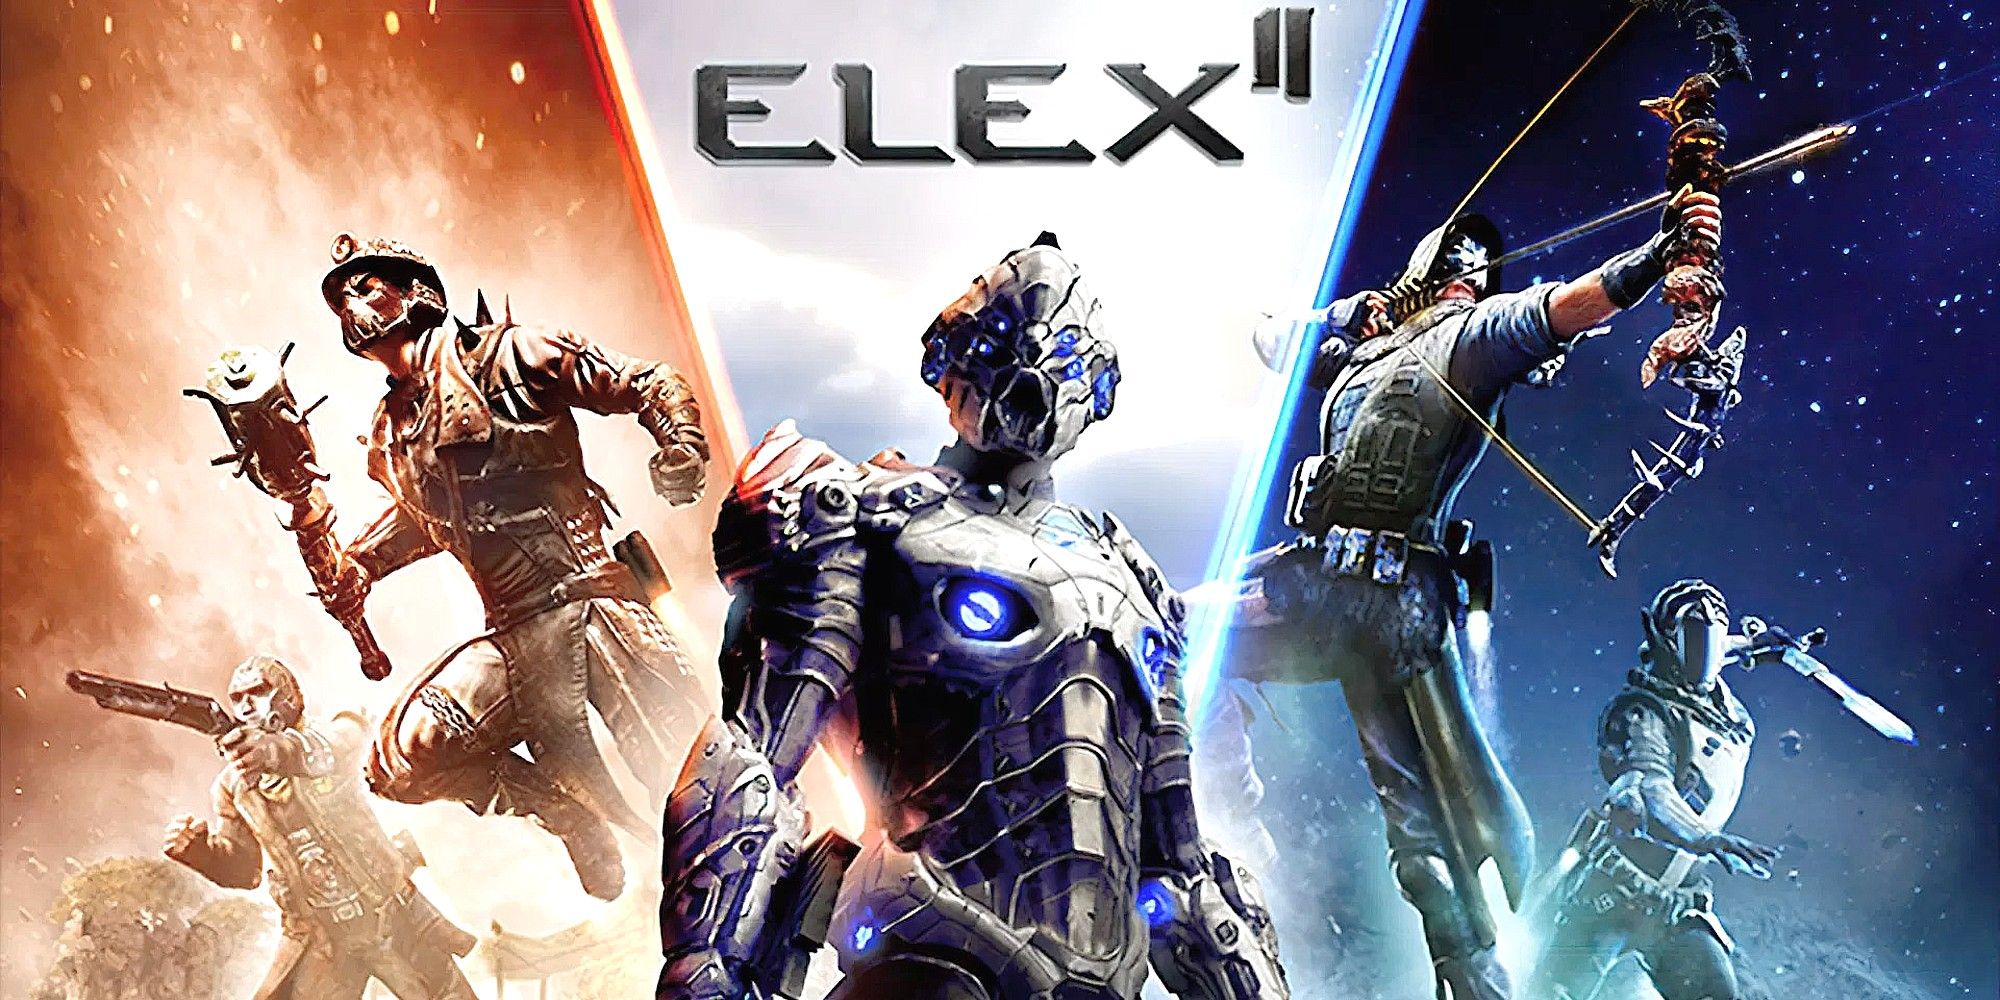 elex 2 release date 2021